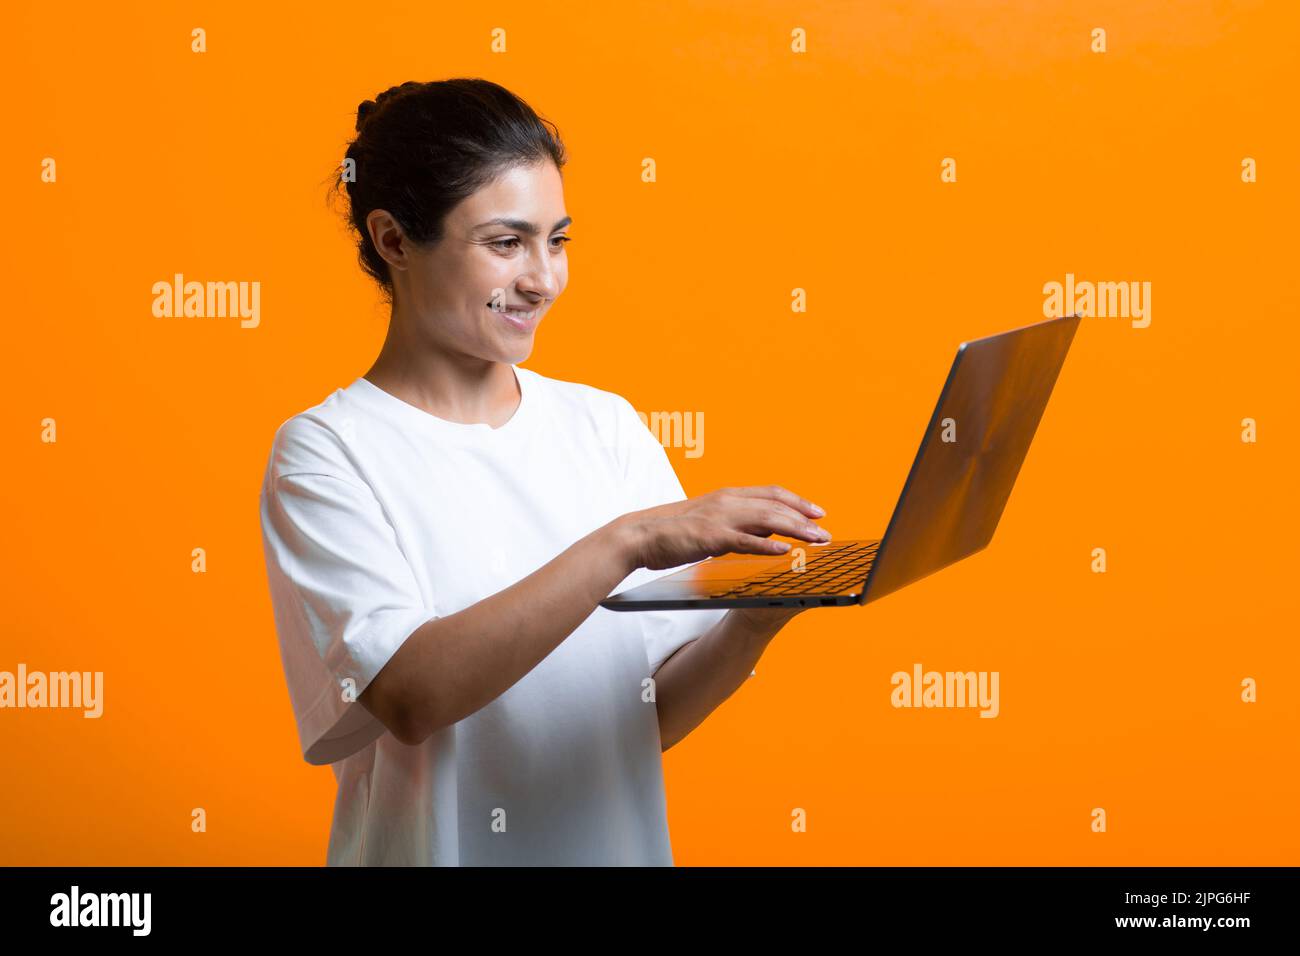 Ritratto di giovane donna indiana sorridente adulta che lavora con un computer portatile Foto Stock